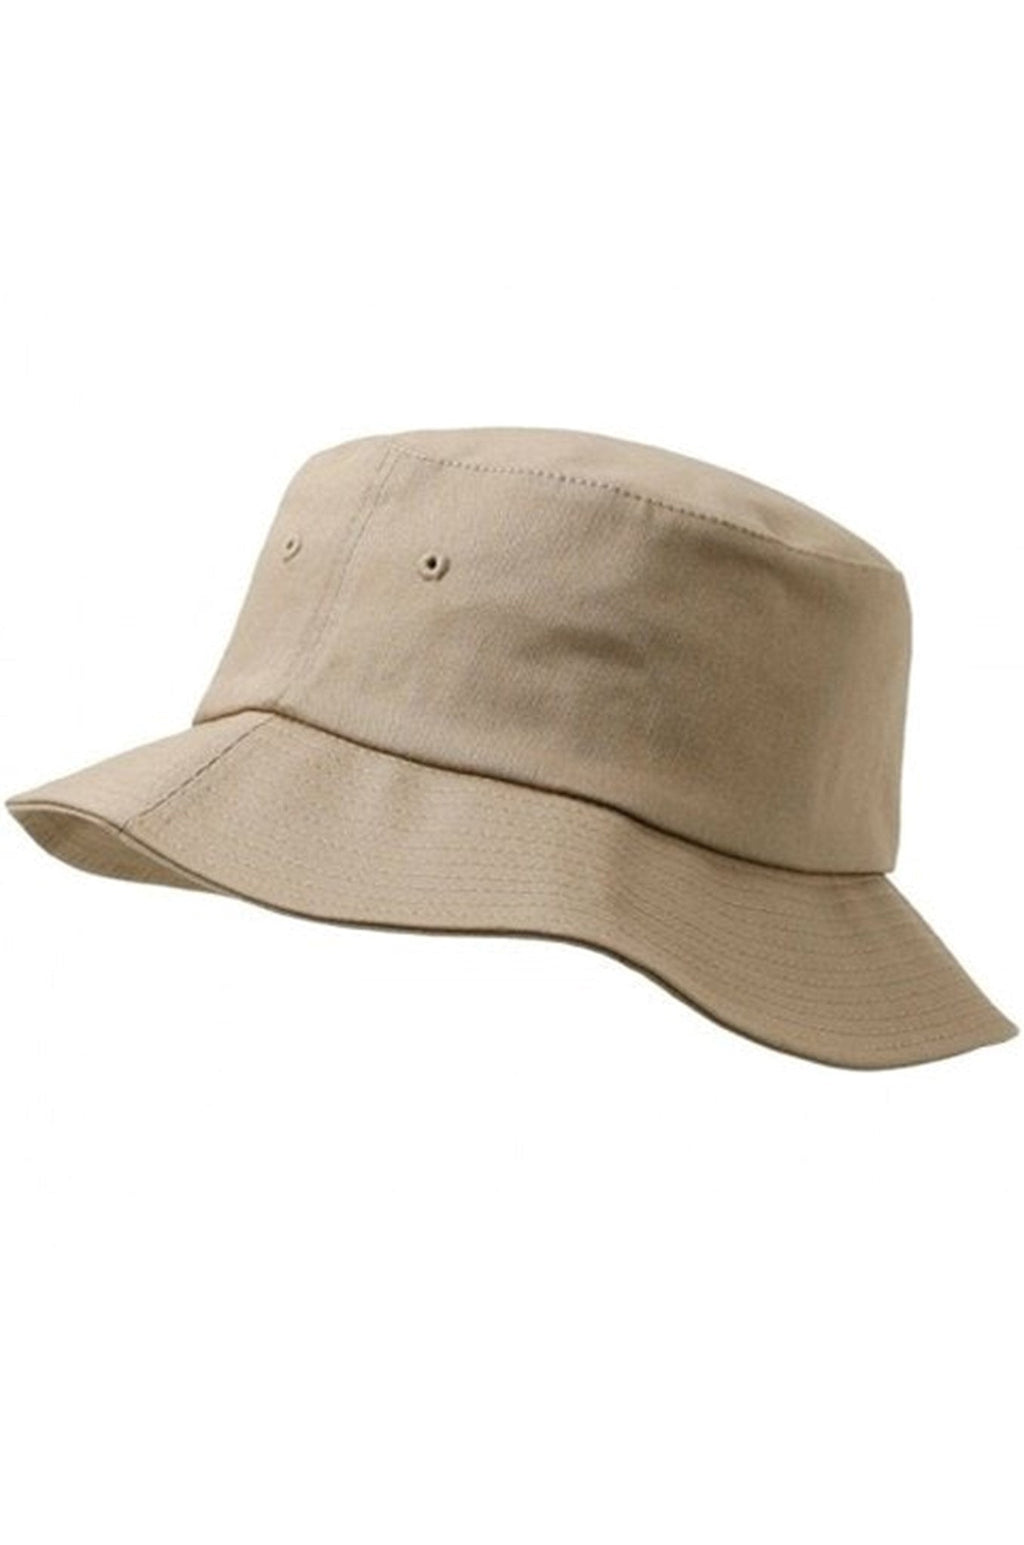 Kibiro skrybėlė - smėlio spalvos